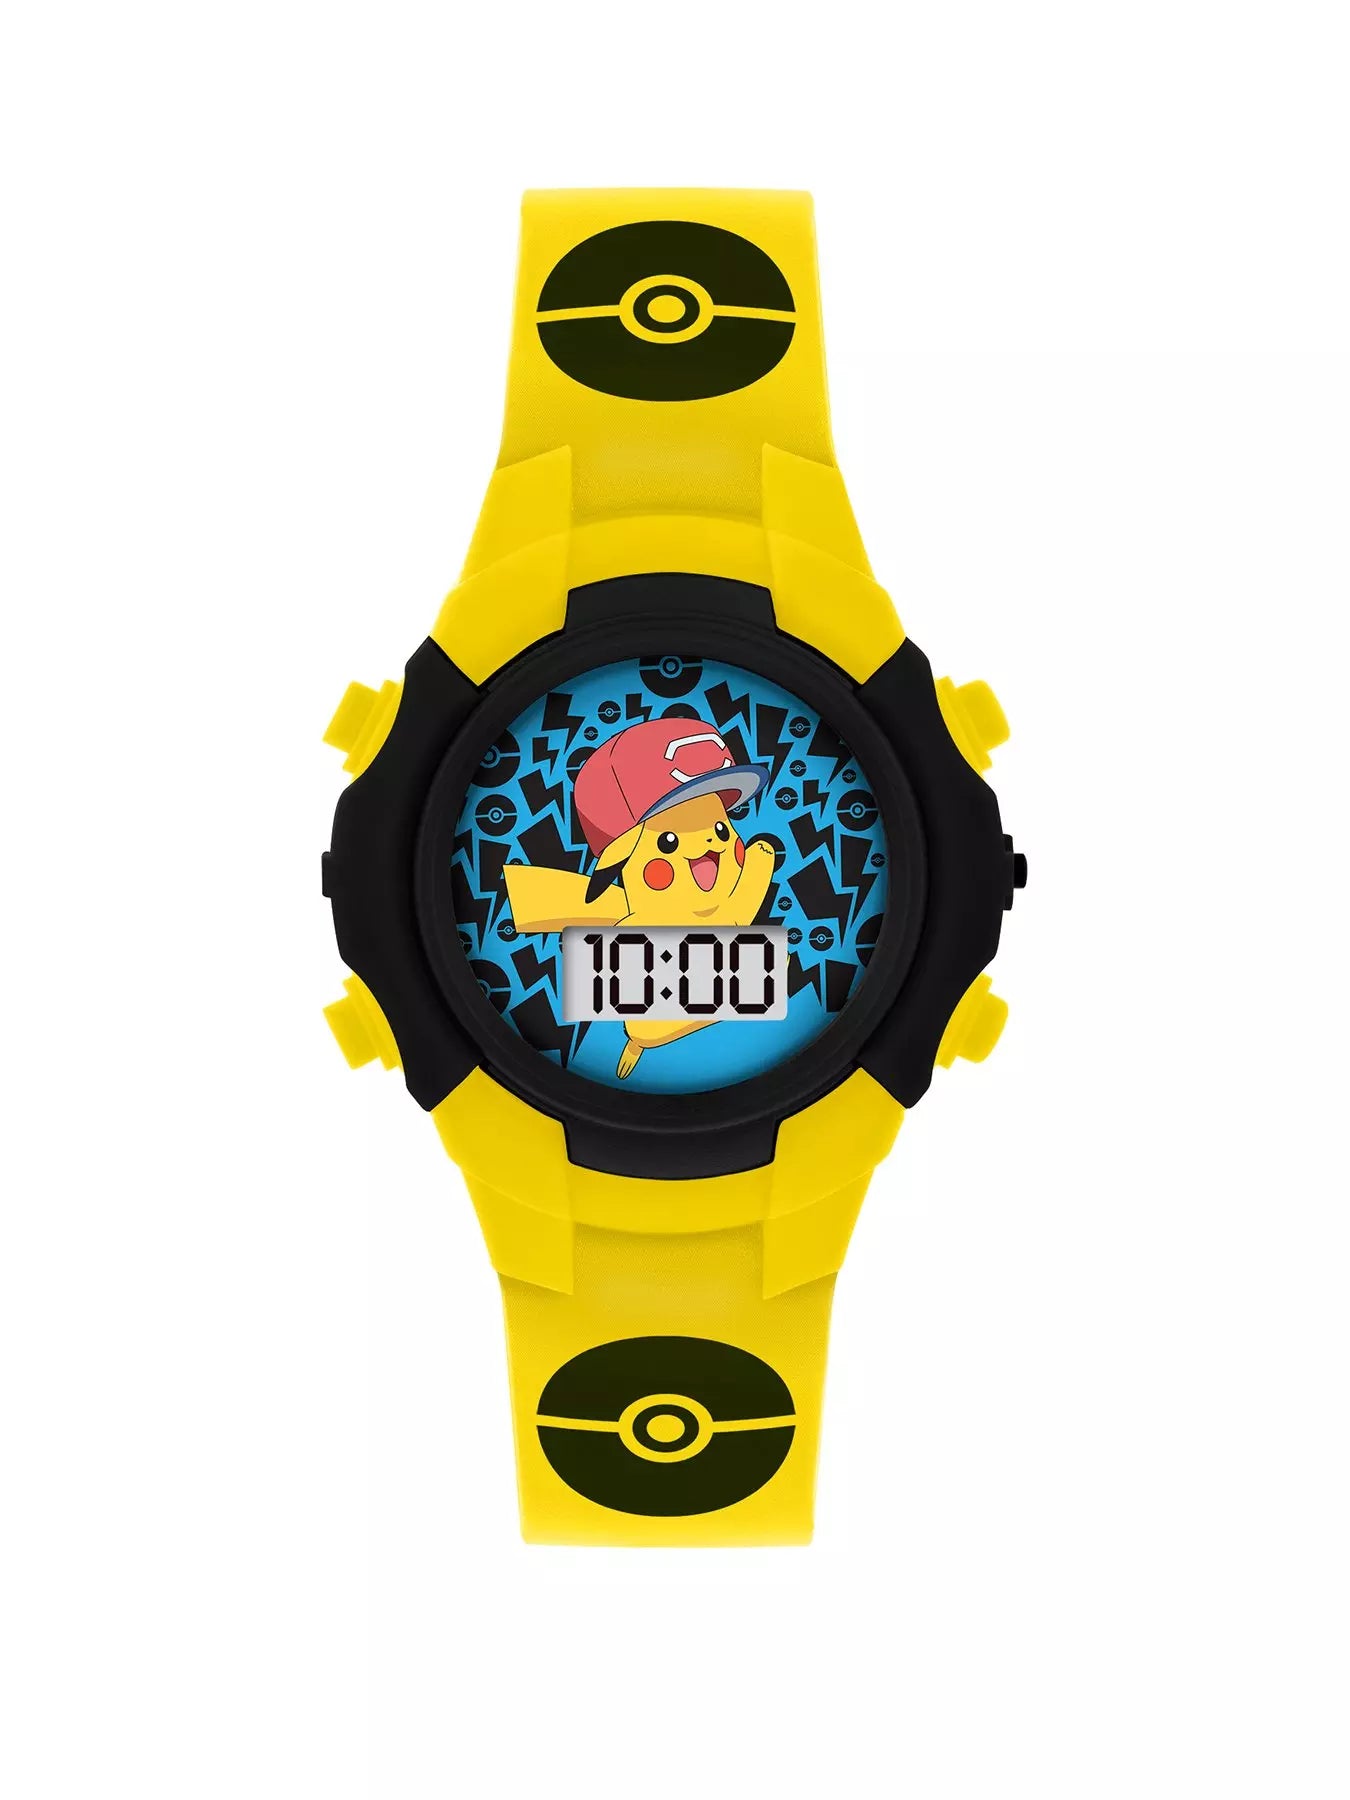 Pokeman Flashing LCD Watch